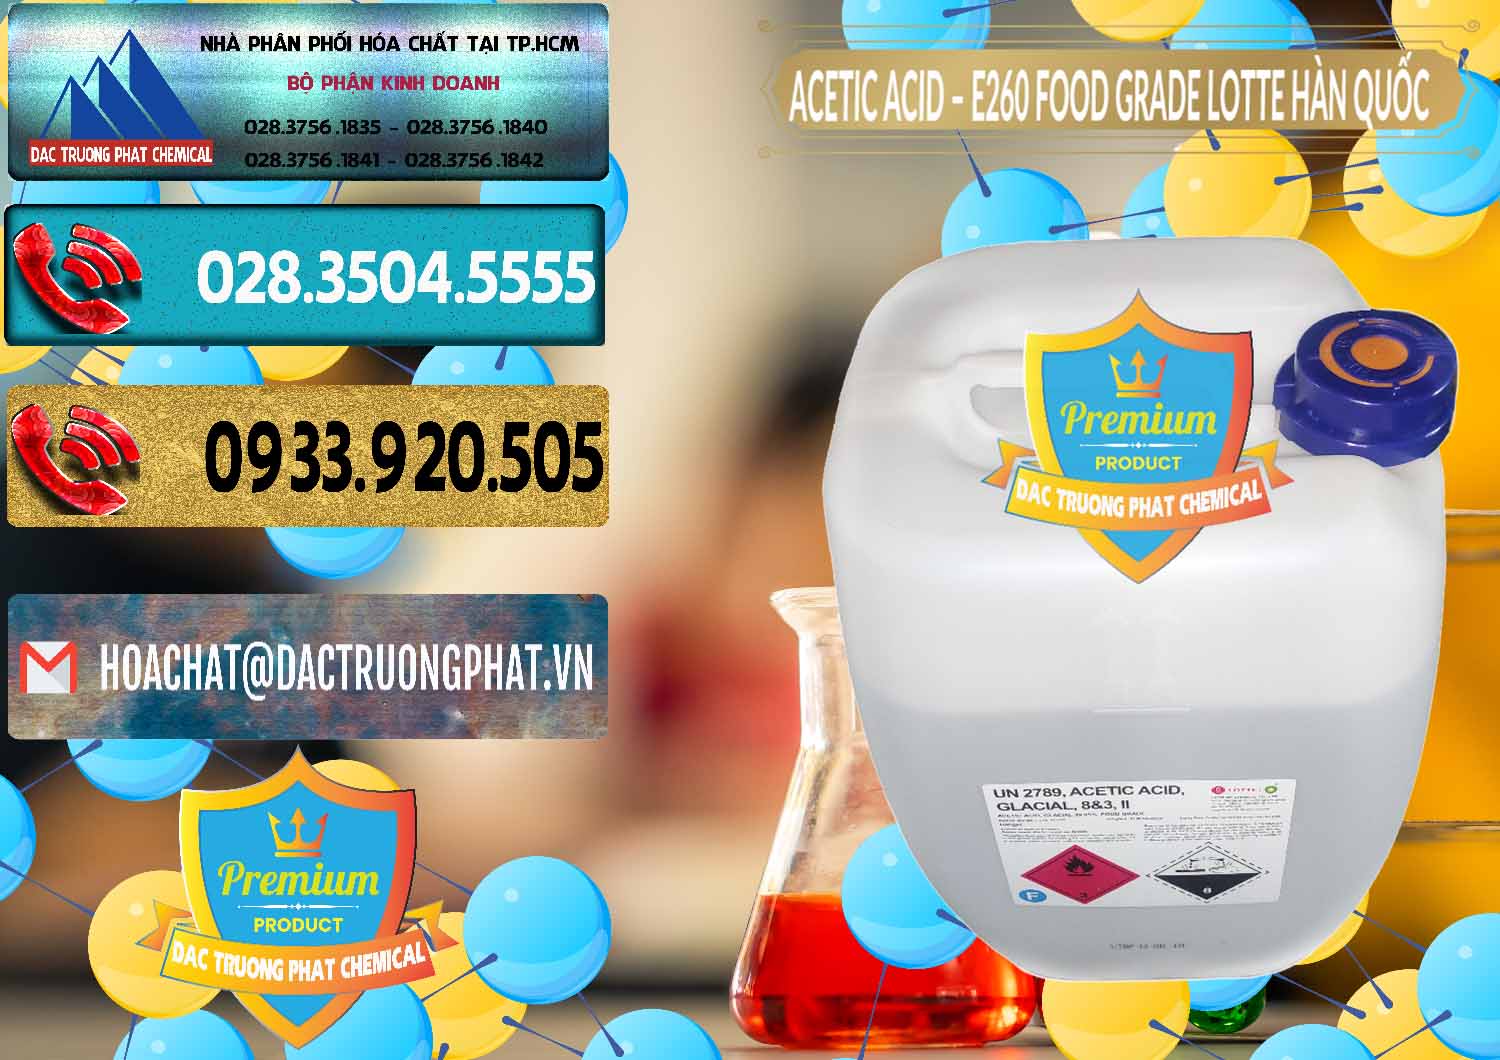 Công ty chuyên phân phối - bán Acetic Acid – Axit Acetic E260 Food Grade Hàn Quốc Lotte Korea - 0003 - Công ty cung cấp - phân phối hóa chất tại TP.HCM - hoachatdetnhuom.com